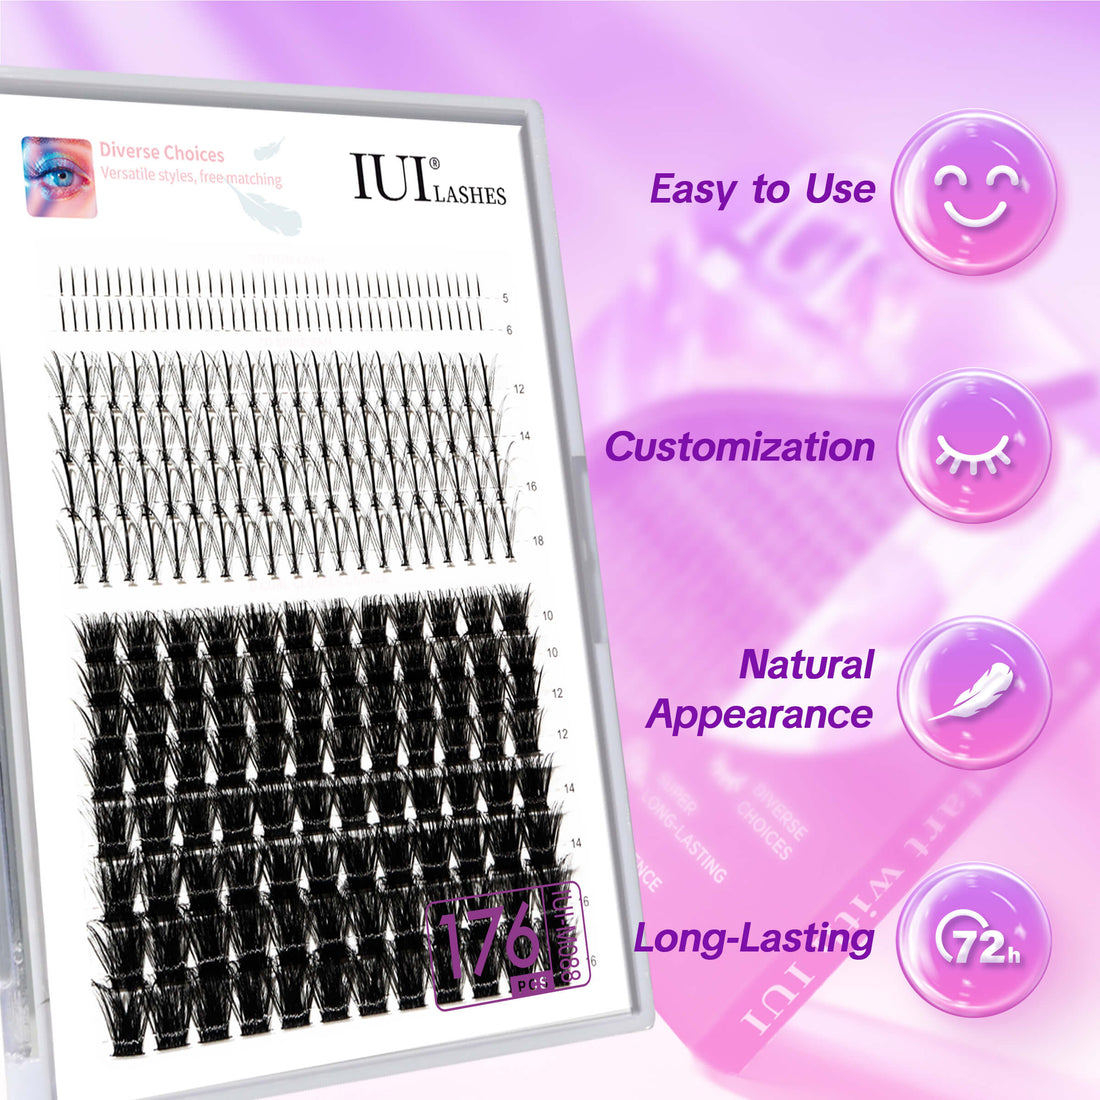 IUI® DIY Lash Extension Kit, Waterproof Elegance, Gentle Adhesion, All-Day Wear